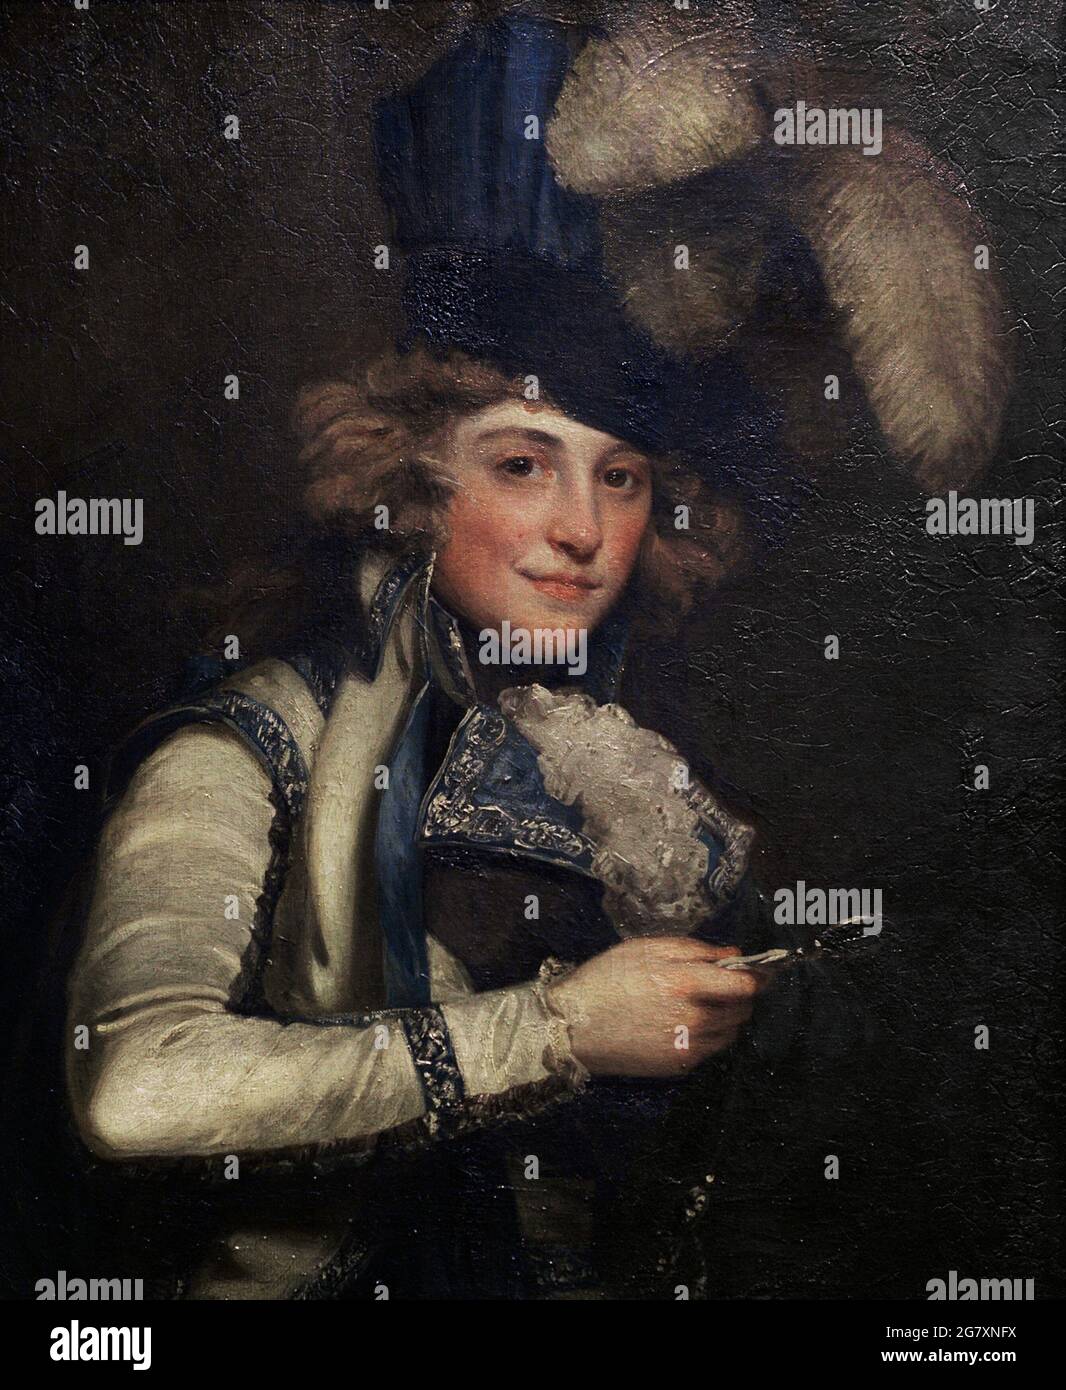 Dorothy Jordan (1761-1816). Irische Schauspielerin. Mrs. Jordan charakterisierte Hippolyta in „Sie würde und sie würde nicht“. Porträt von John Hoppner (1758-1810). Öl auf Leinwand (74,9 x 62,2 cm), ausgestellt 1791. National Portrait Gallery. London, England, Vereinigtes Königreich. Stockfoto